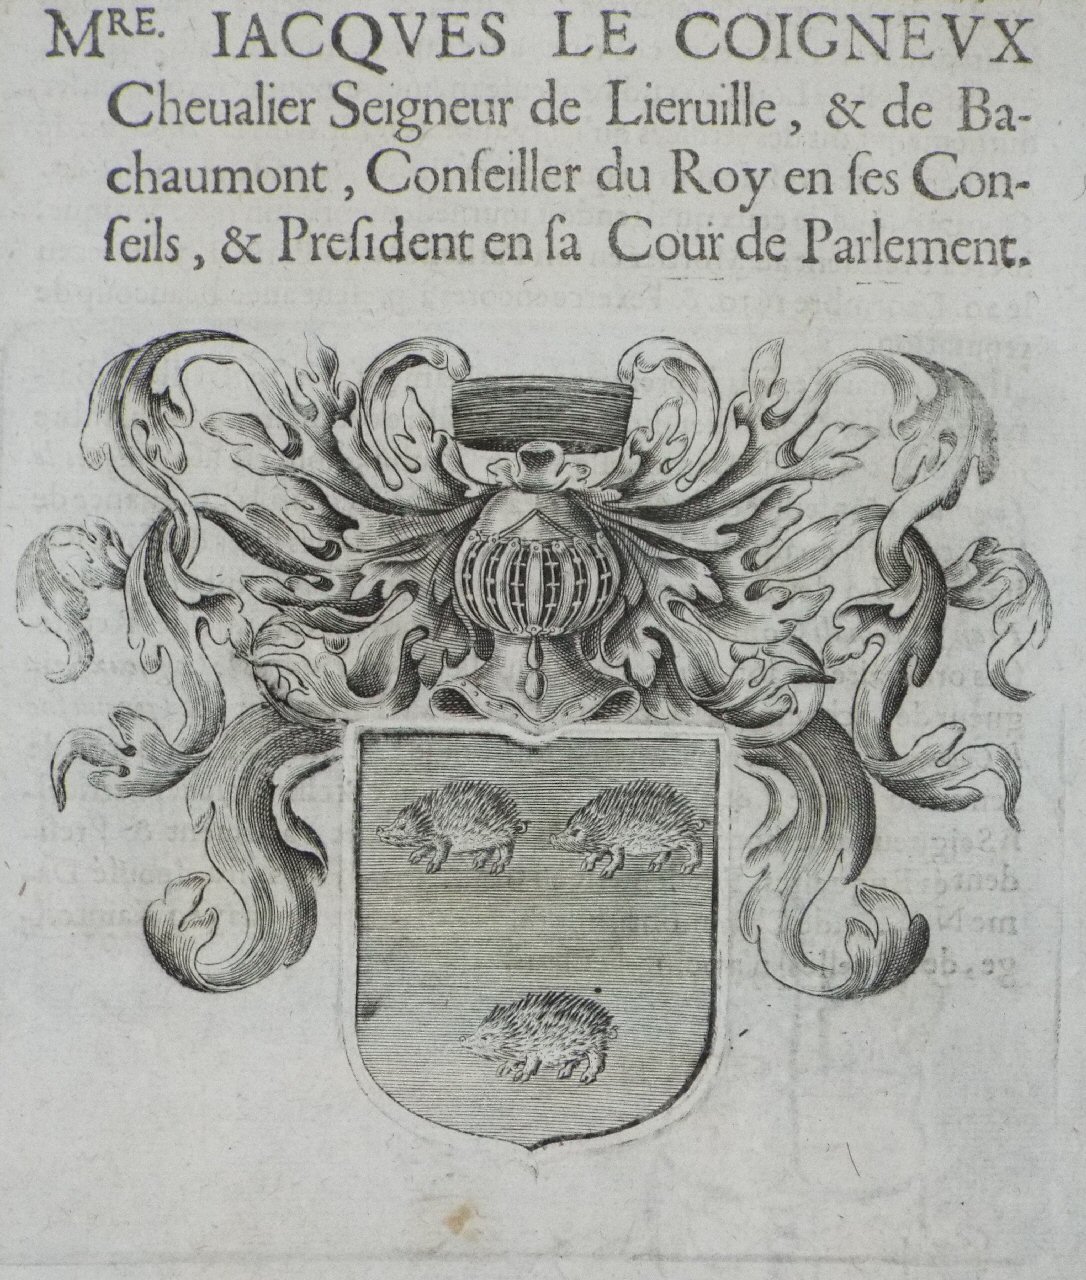 Print - Mre. Jacques le Coigneux Chevalier Seigneur de Lieruille, & de Ba-chaumont, Conseiller du Roy en ses Conseils, & President en sa Cour de Parlement.